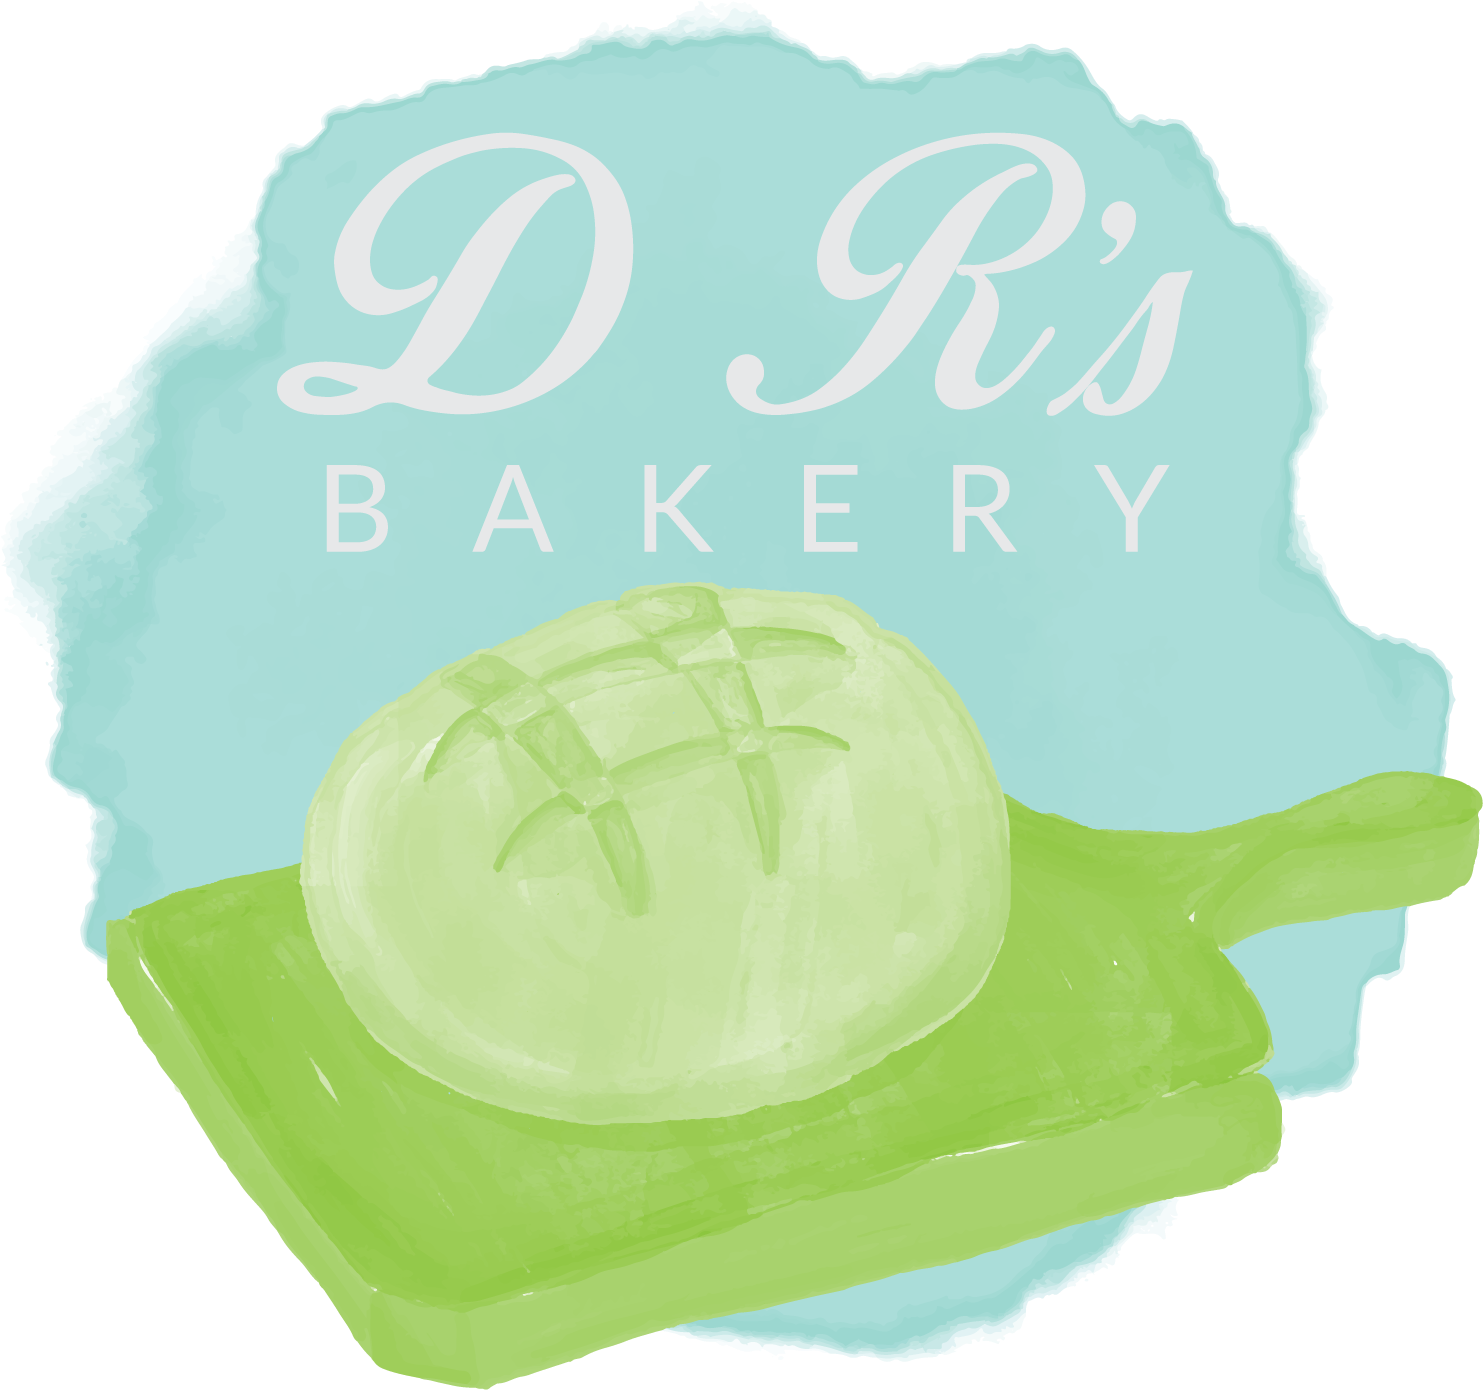 Artistic Bakery Logo Design PNG image